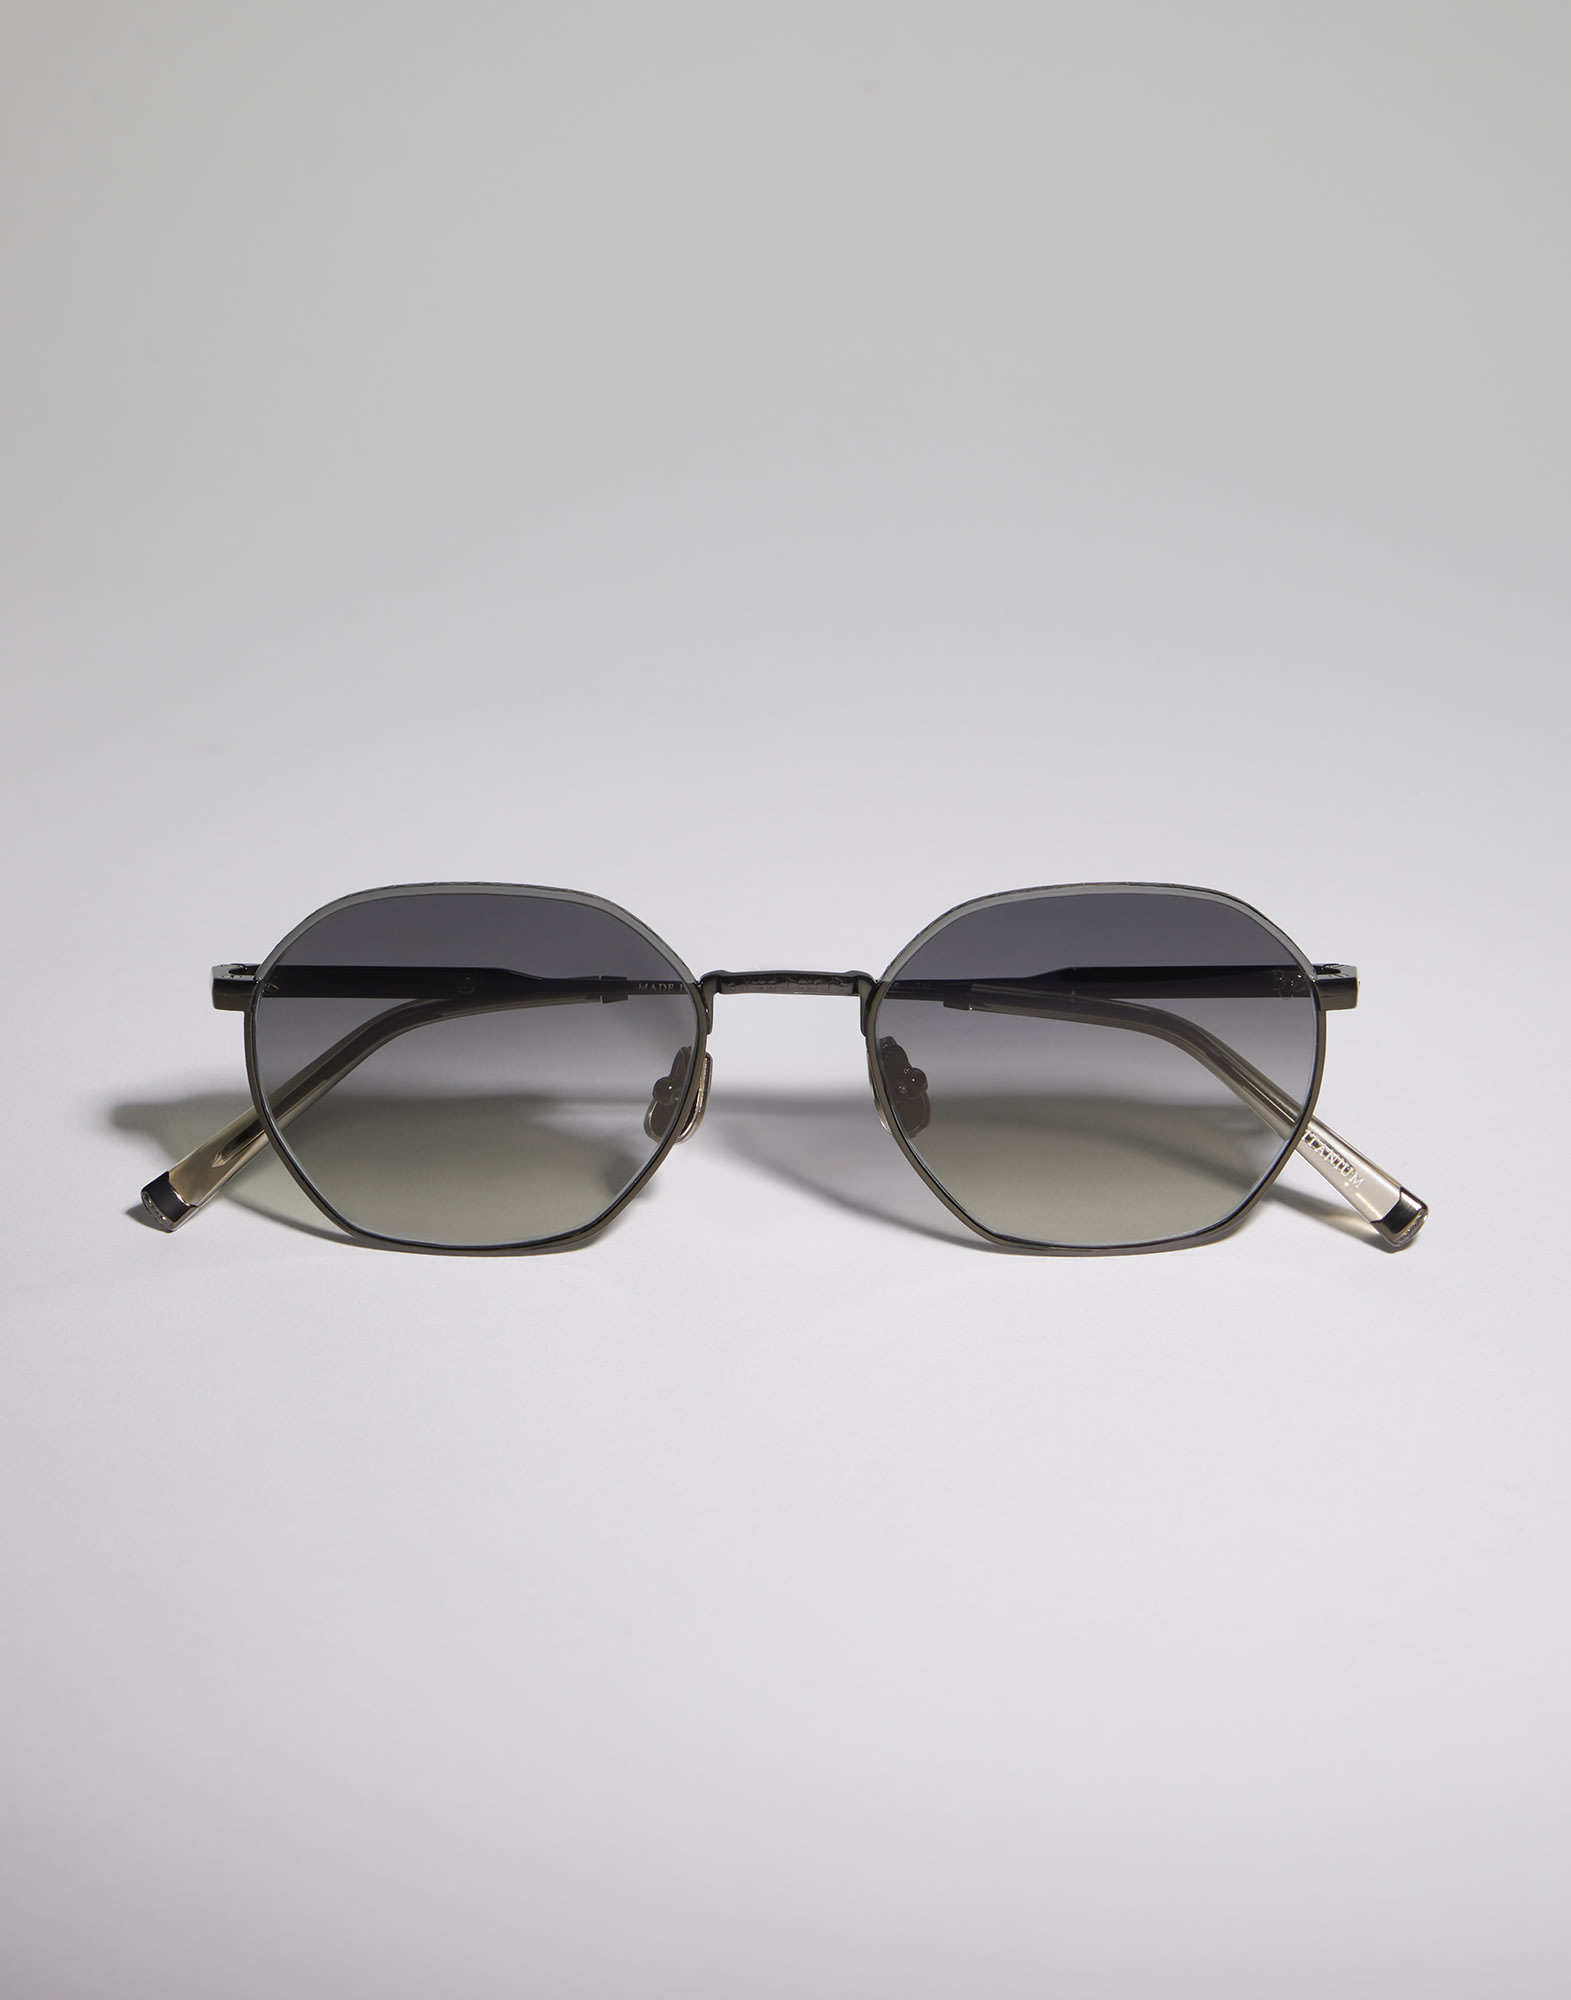 Sonnenbrille aus Titan Grau matt Brillen - Brunello Cucinelli